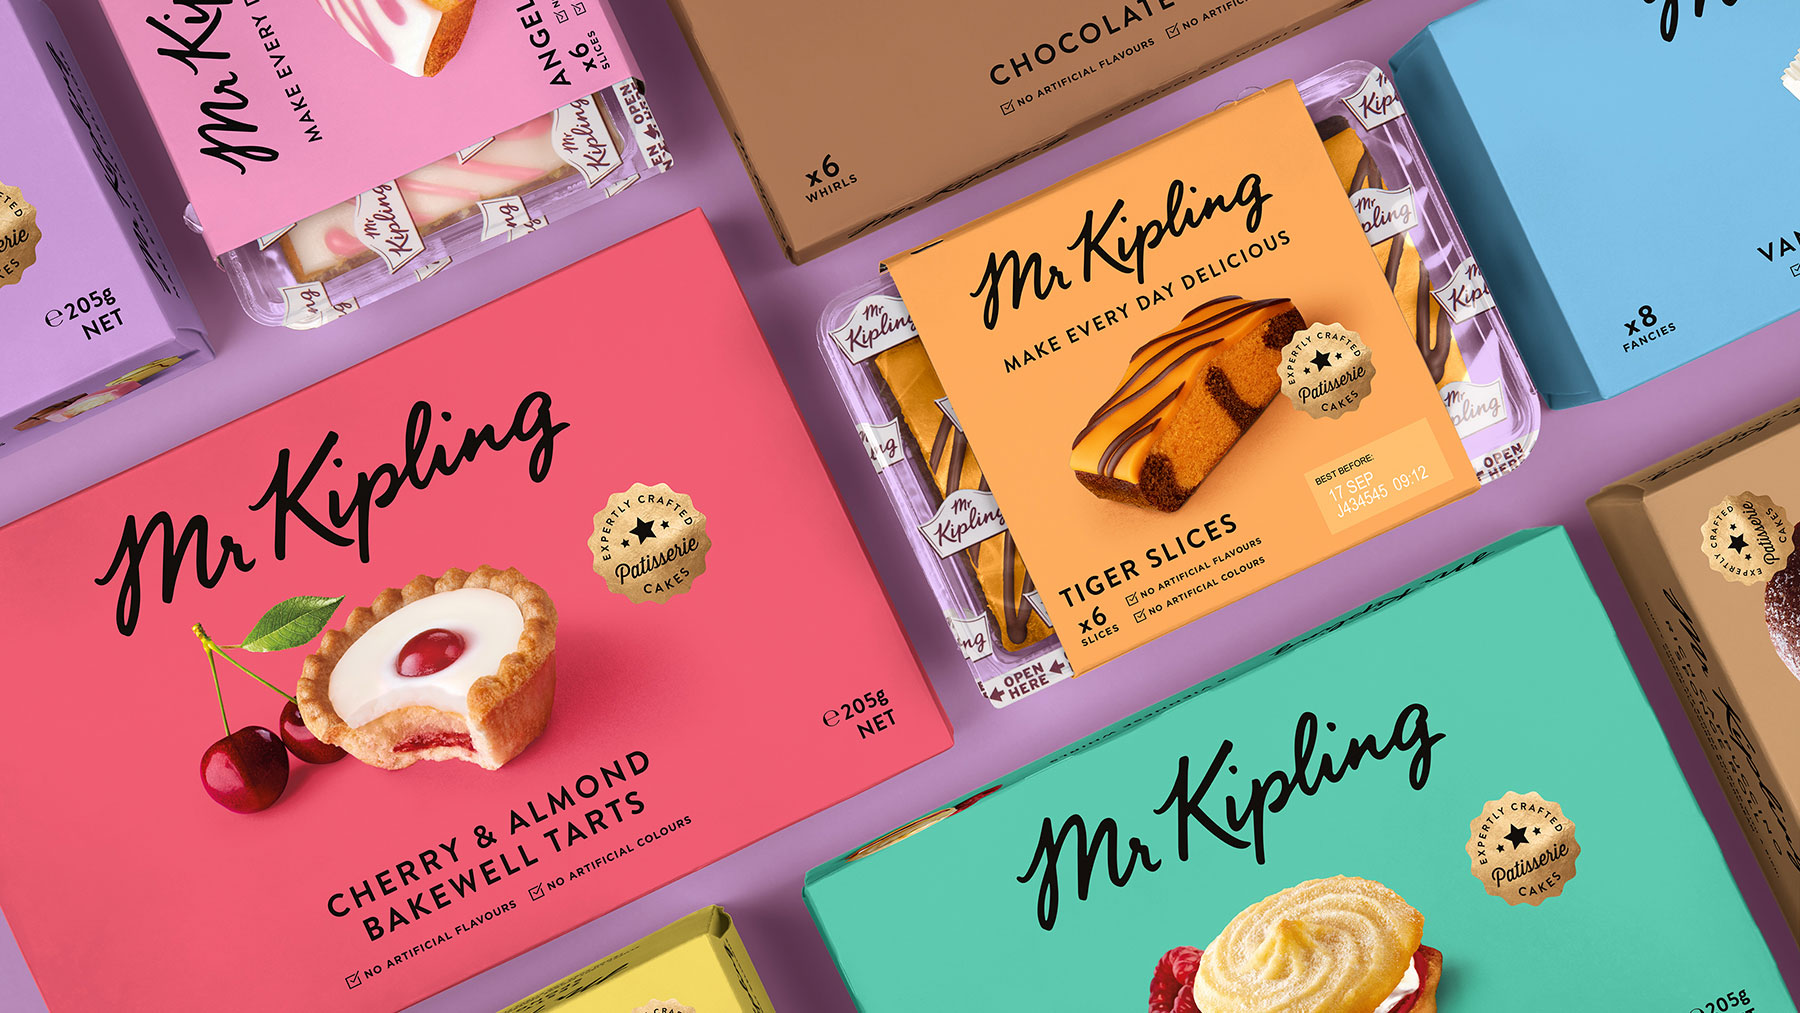 Mr Kipling cake boxes